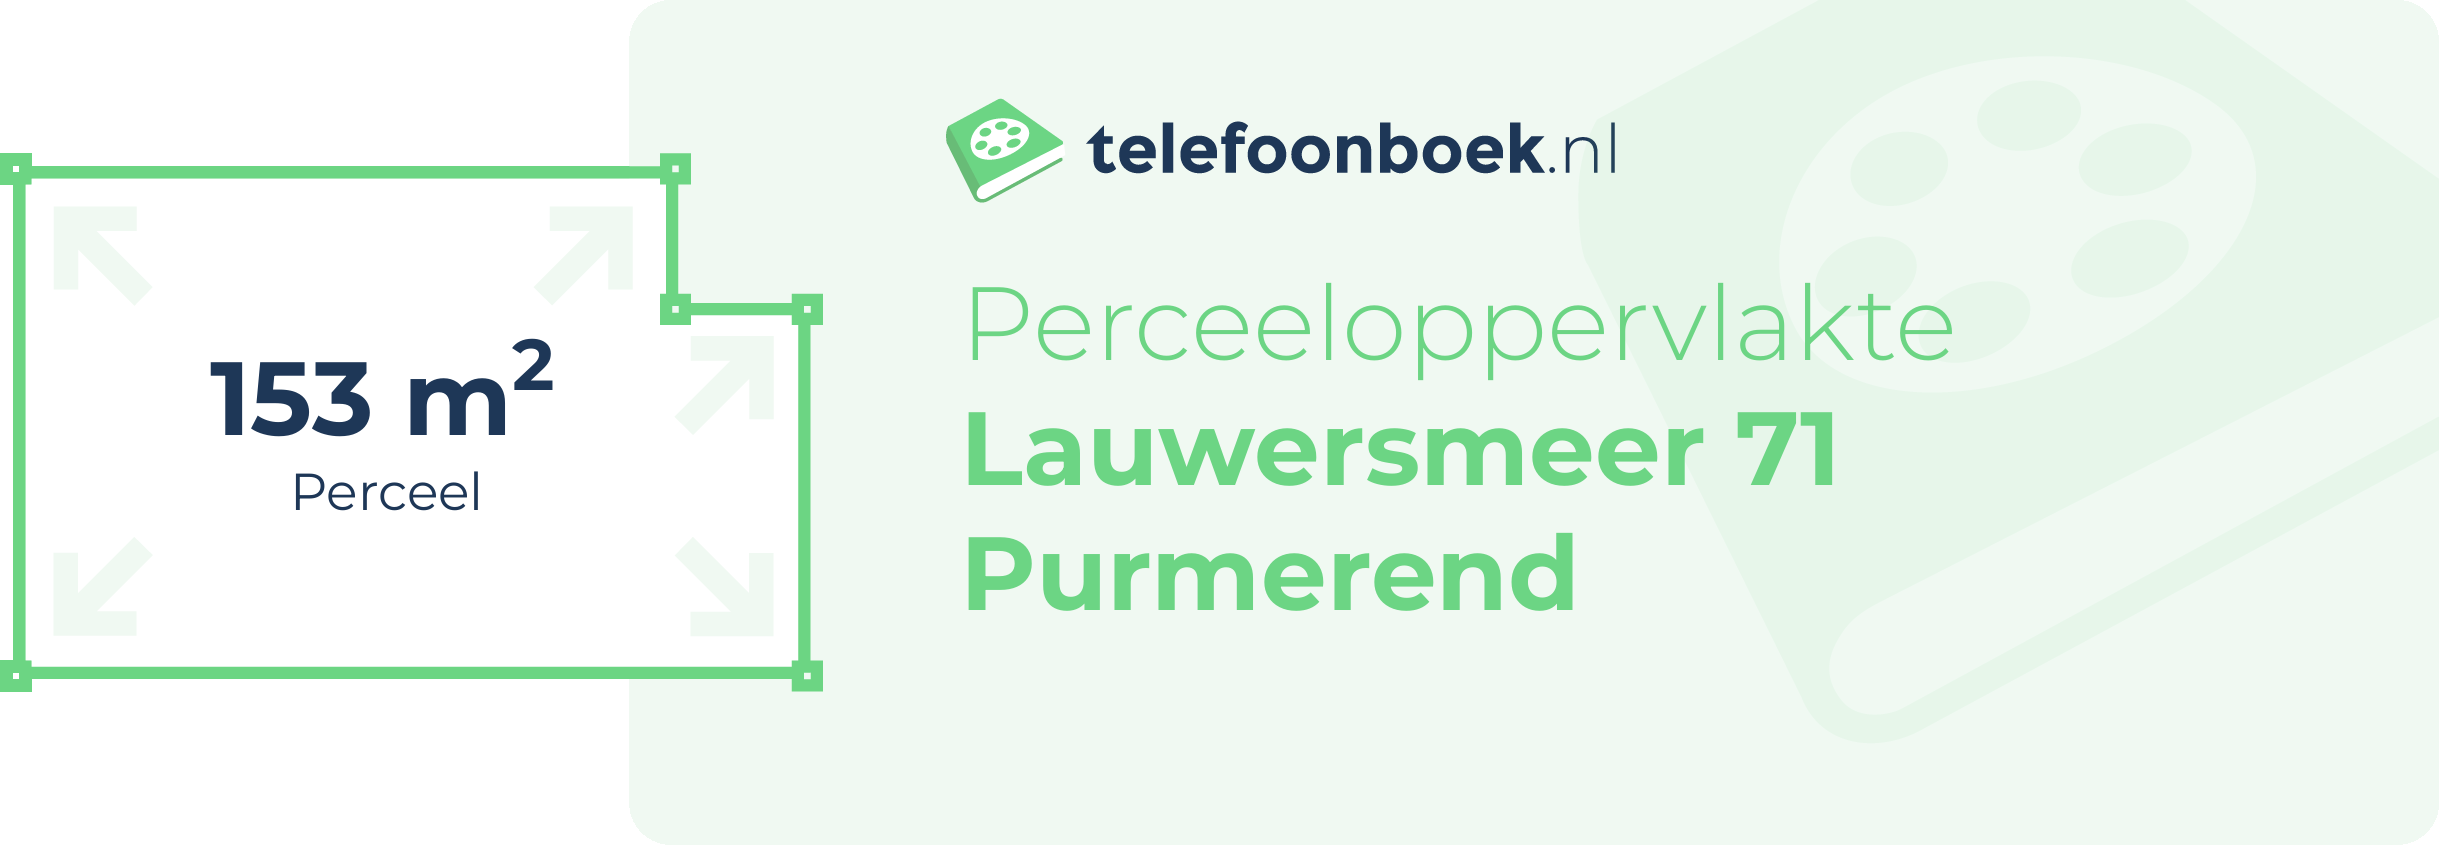 Perceeloppervlakte Lauwersmeer 71 Purmerend